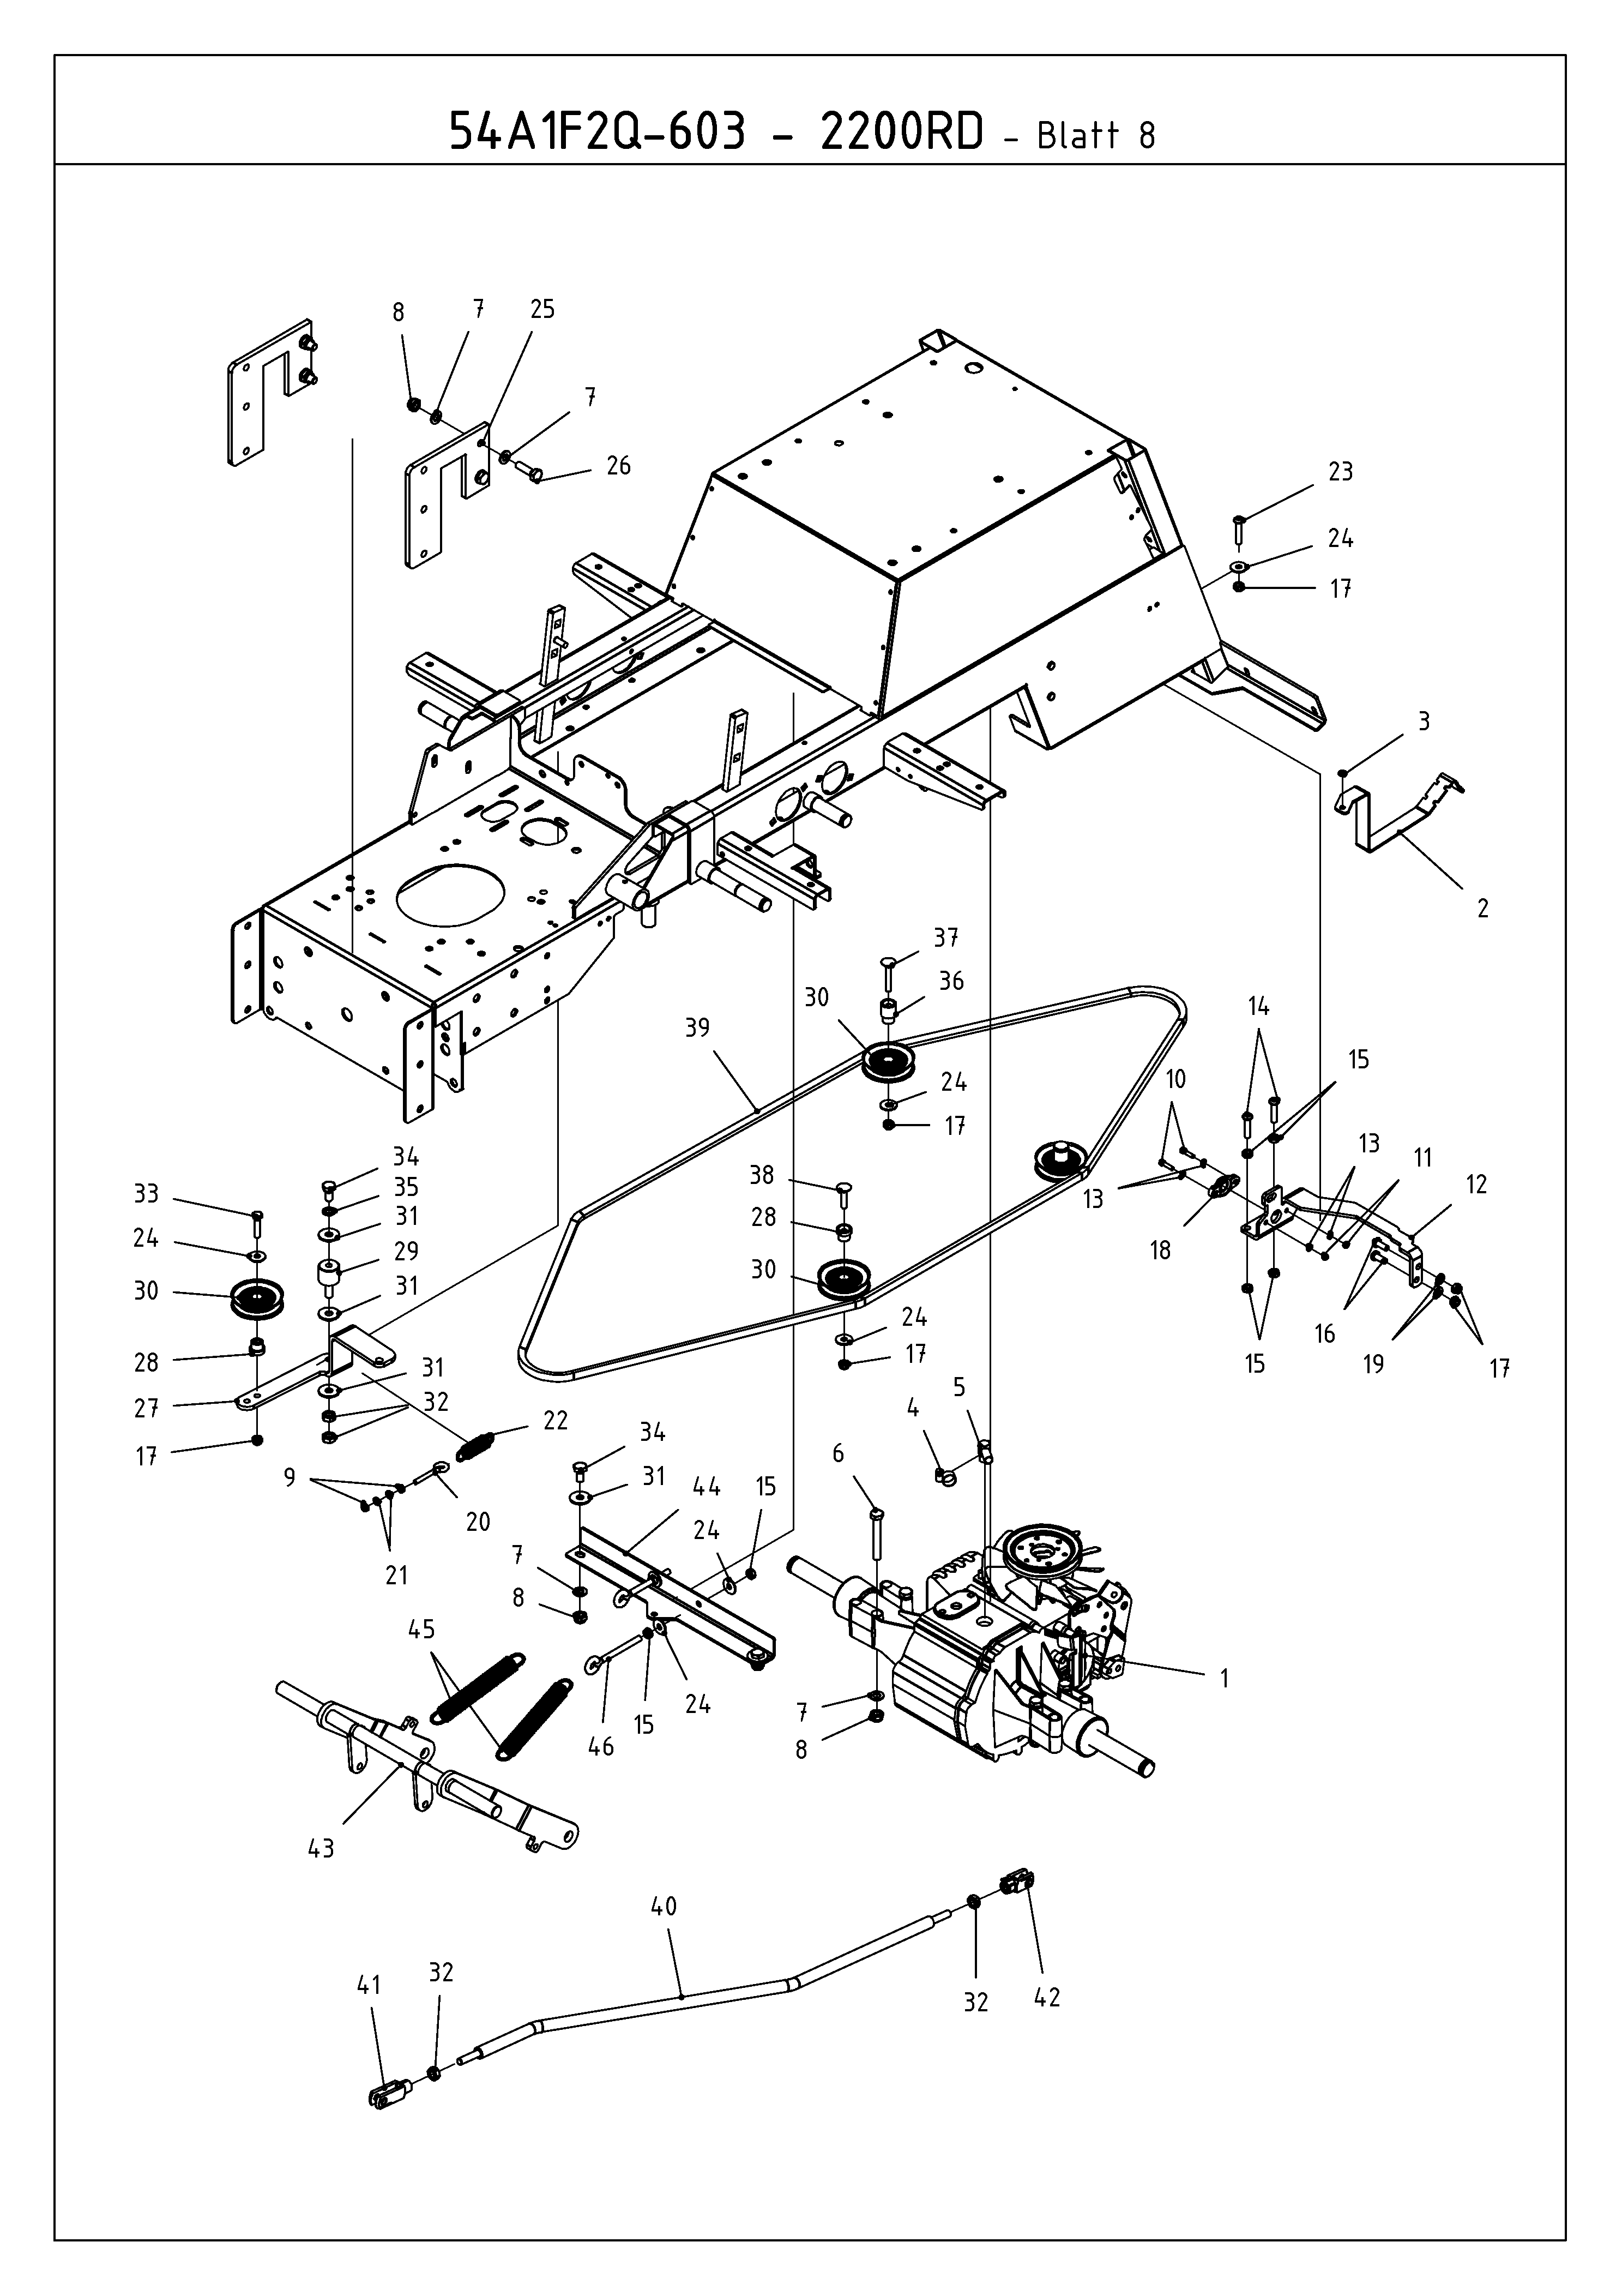 Cub Cadet, Kompakttraktoren, CC 2200 RD 2 WD, 54A1F2Q-603 (2009), Fahrantrieb, Mähwerksaushebung, MTD Ersatzteil-Zeichnungen